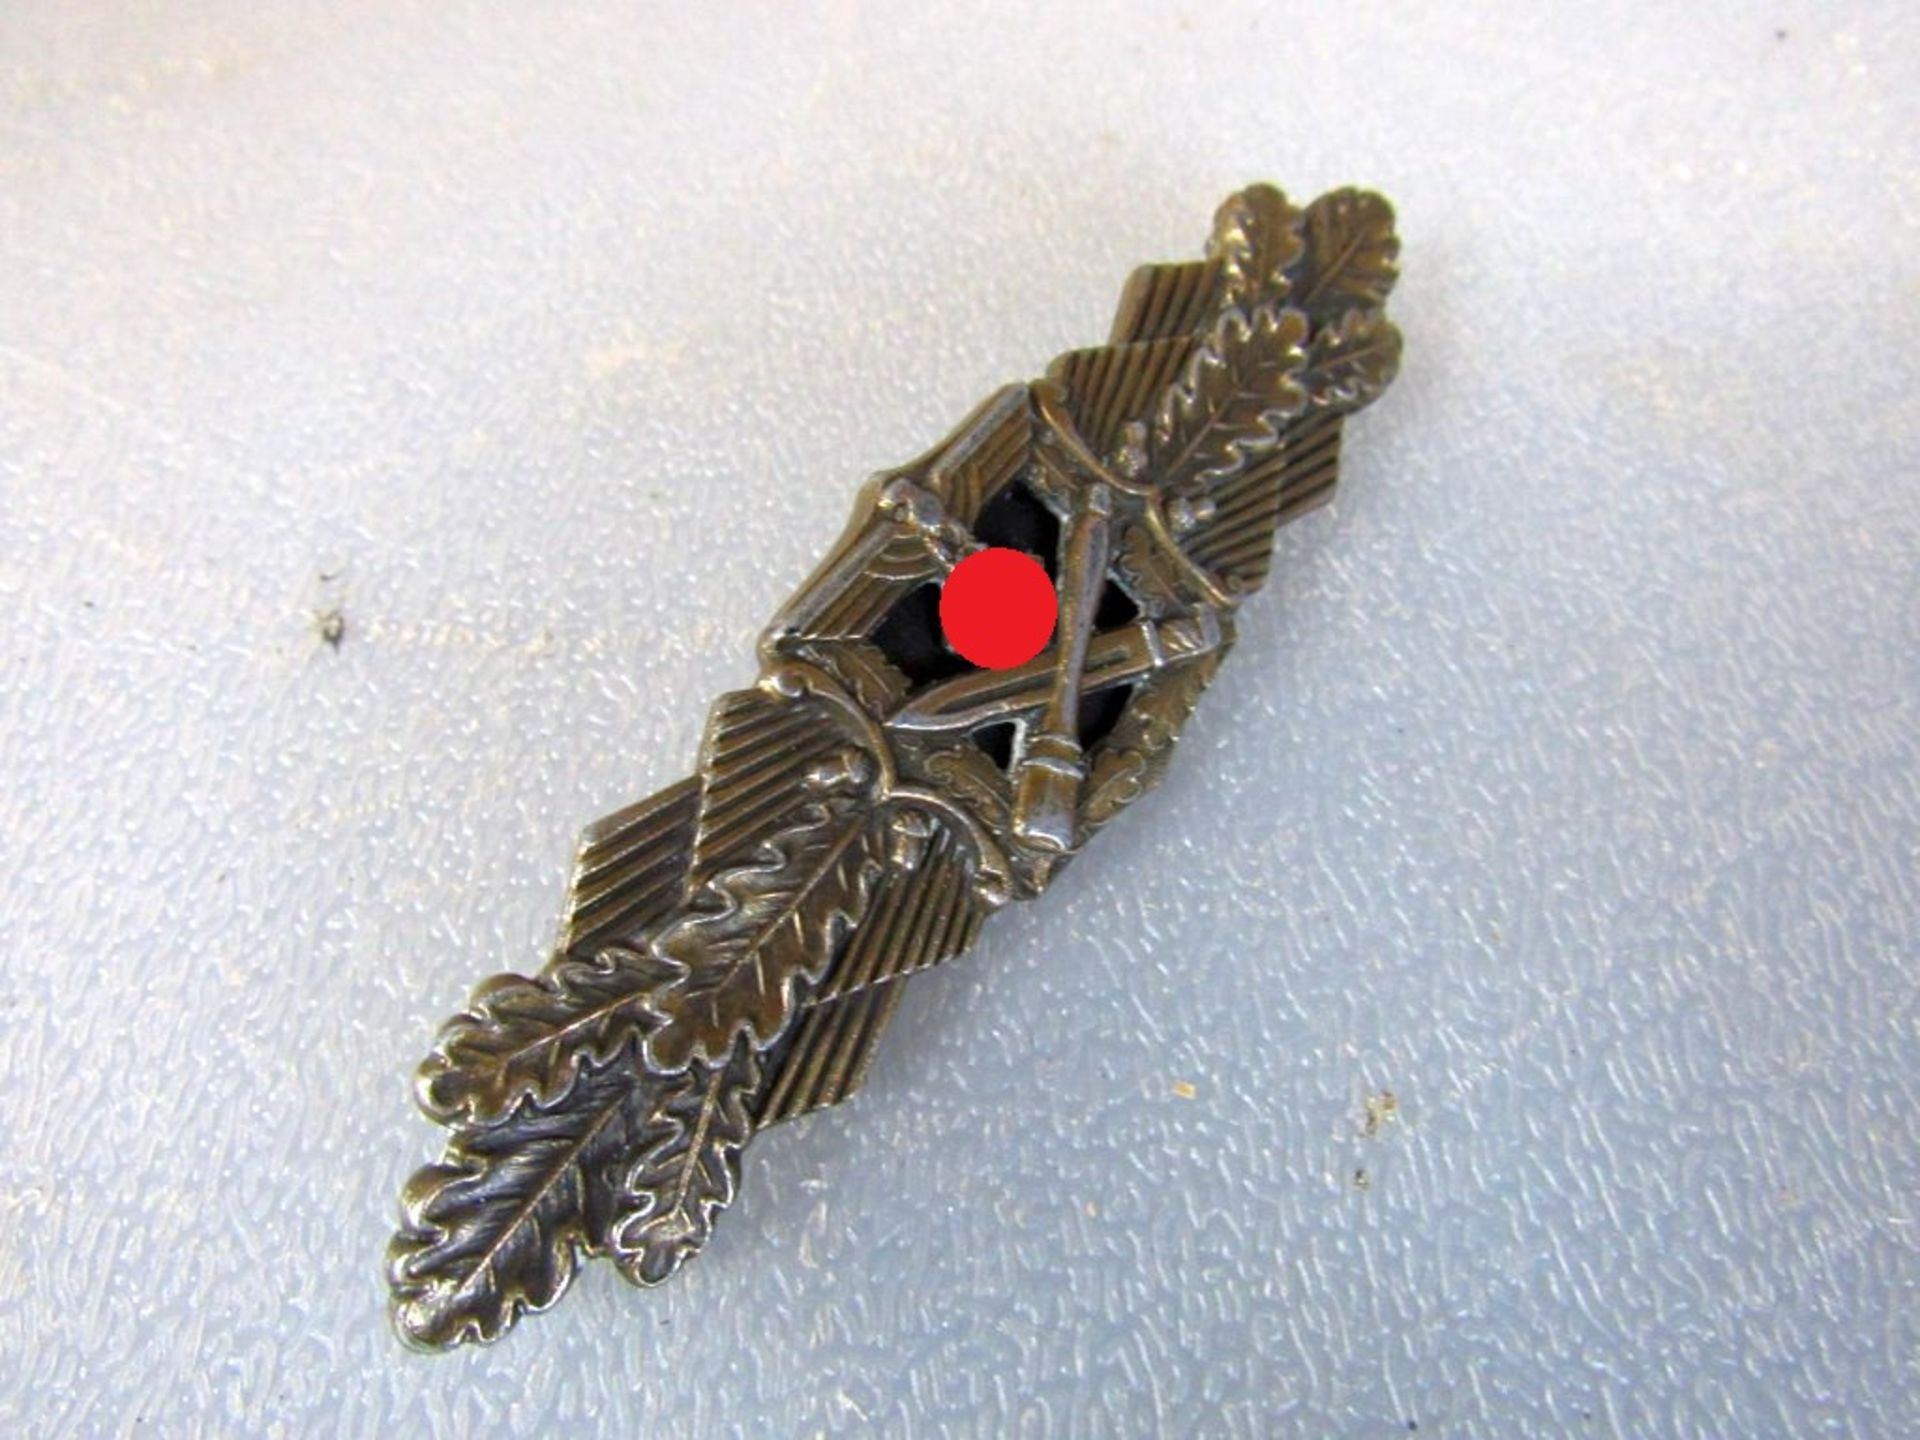 Nahkampfspange in Bronze rückseitig - Image 4 of 10